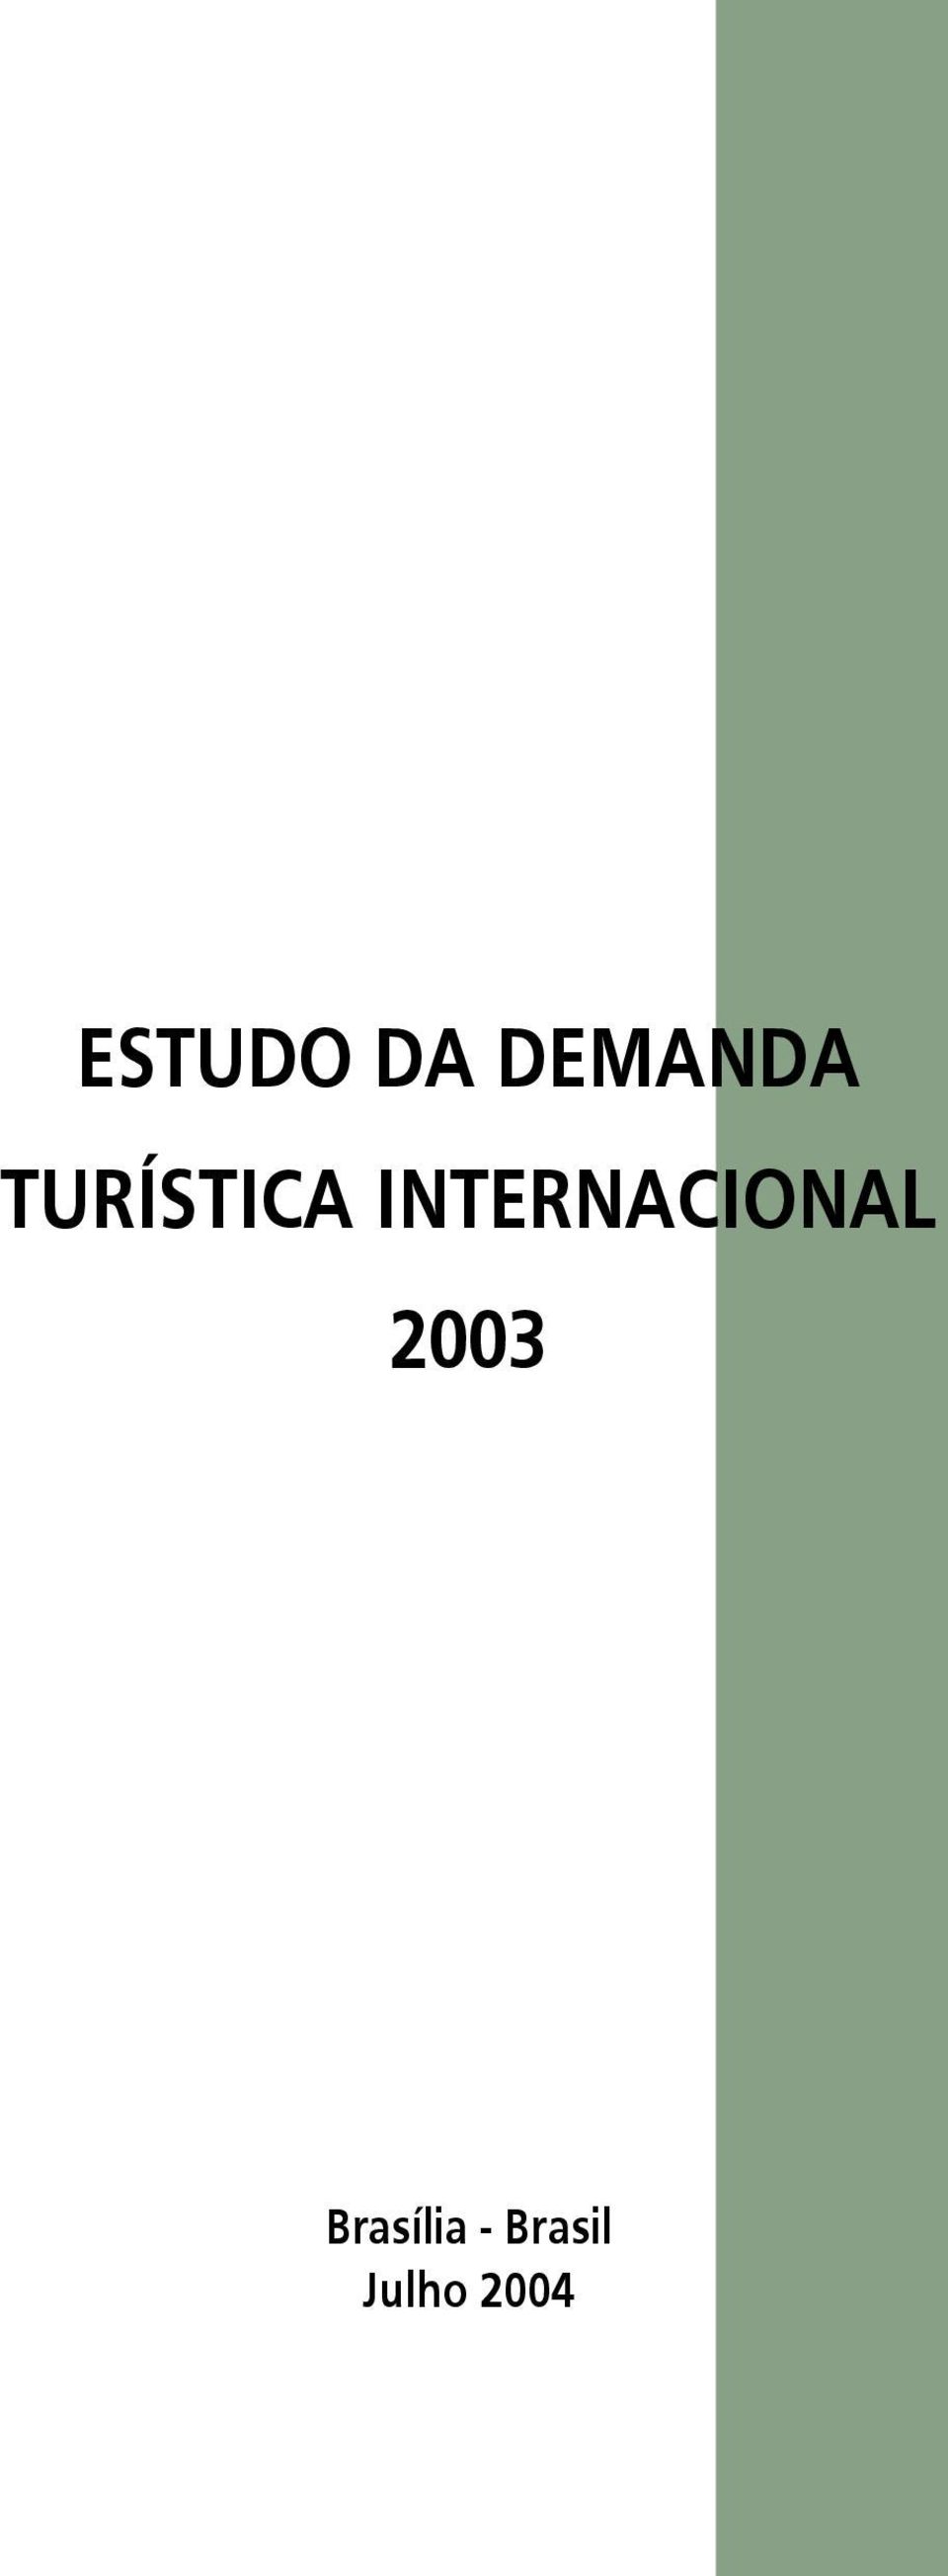 INTERNACIONAL 2003